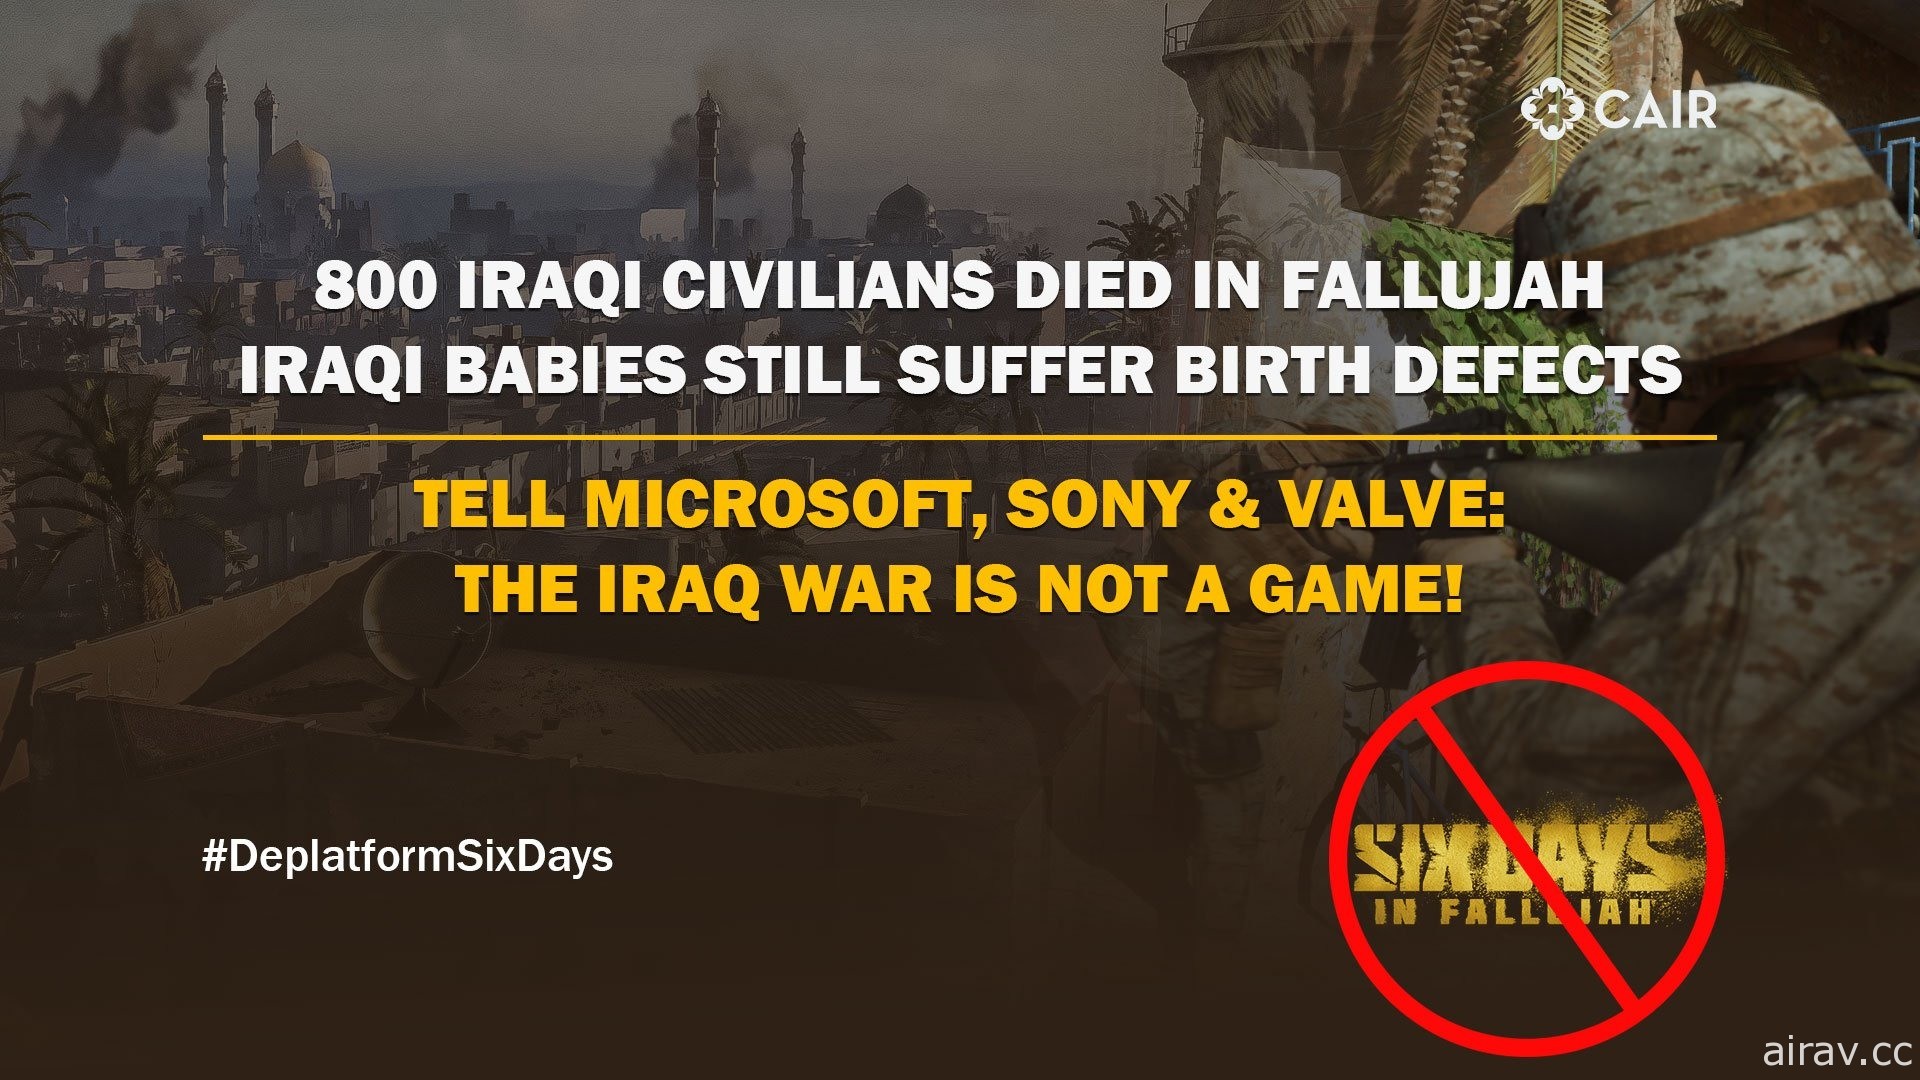 美国穆斯林团体呼吁 Valve、SONY 与微软不要贩售伊拉克战争主题游戏《法鲁贾六日》